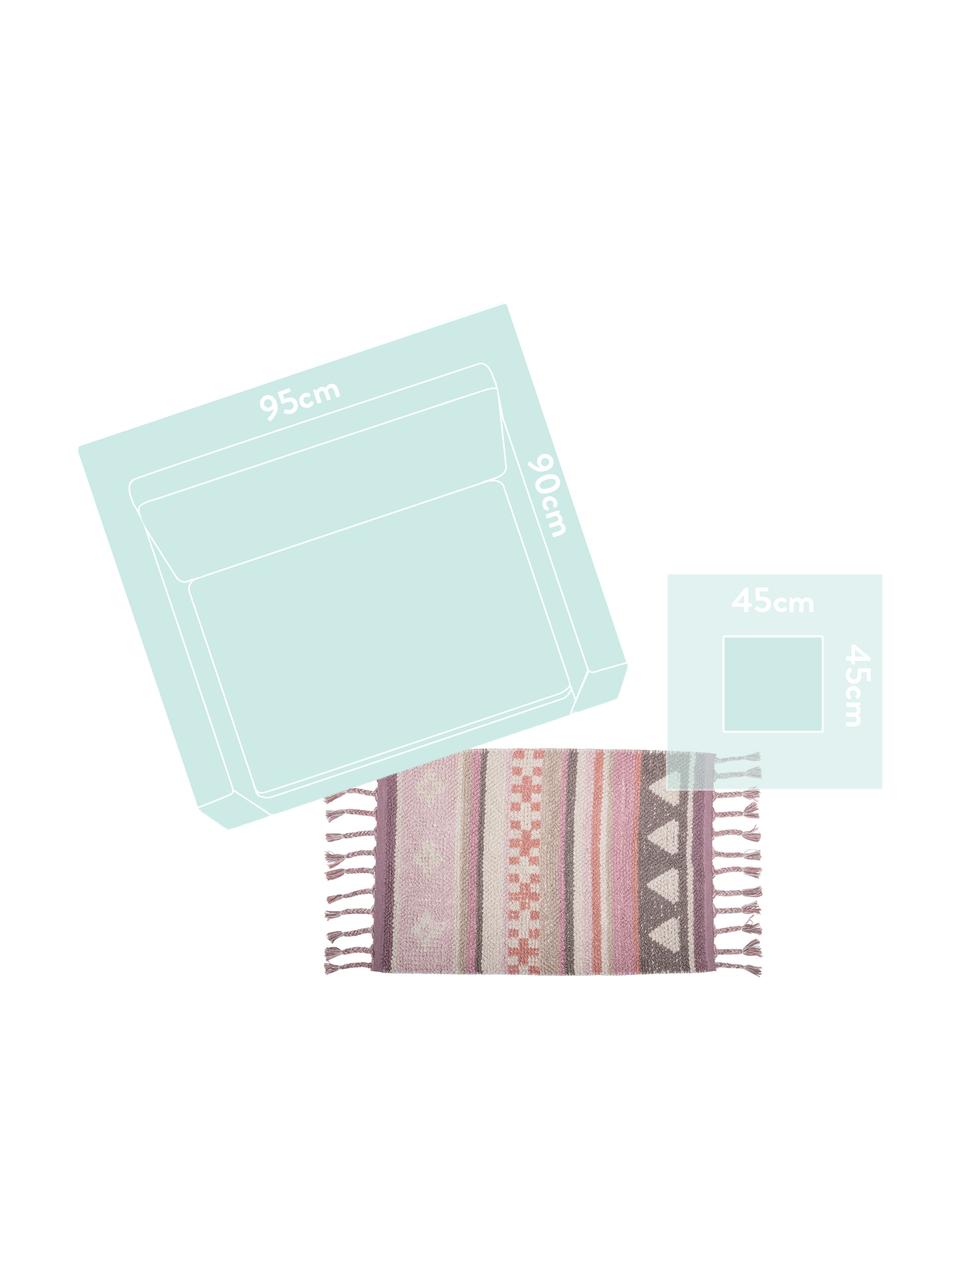 Tappeto in cotone con nappe Nagou, Cotone, Tonalità rosa, bianco, beige, Larg. 60 x Lung. 90 cm